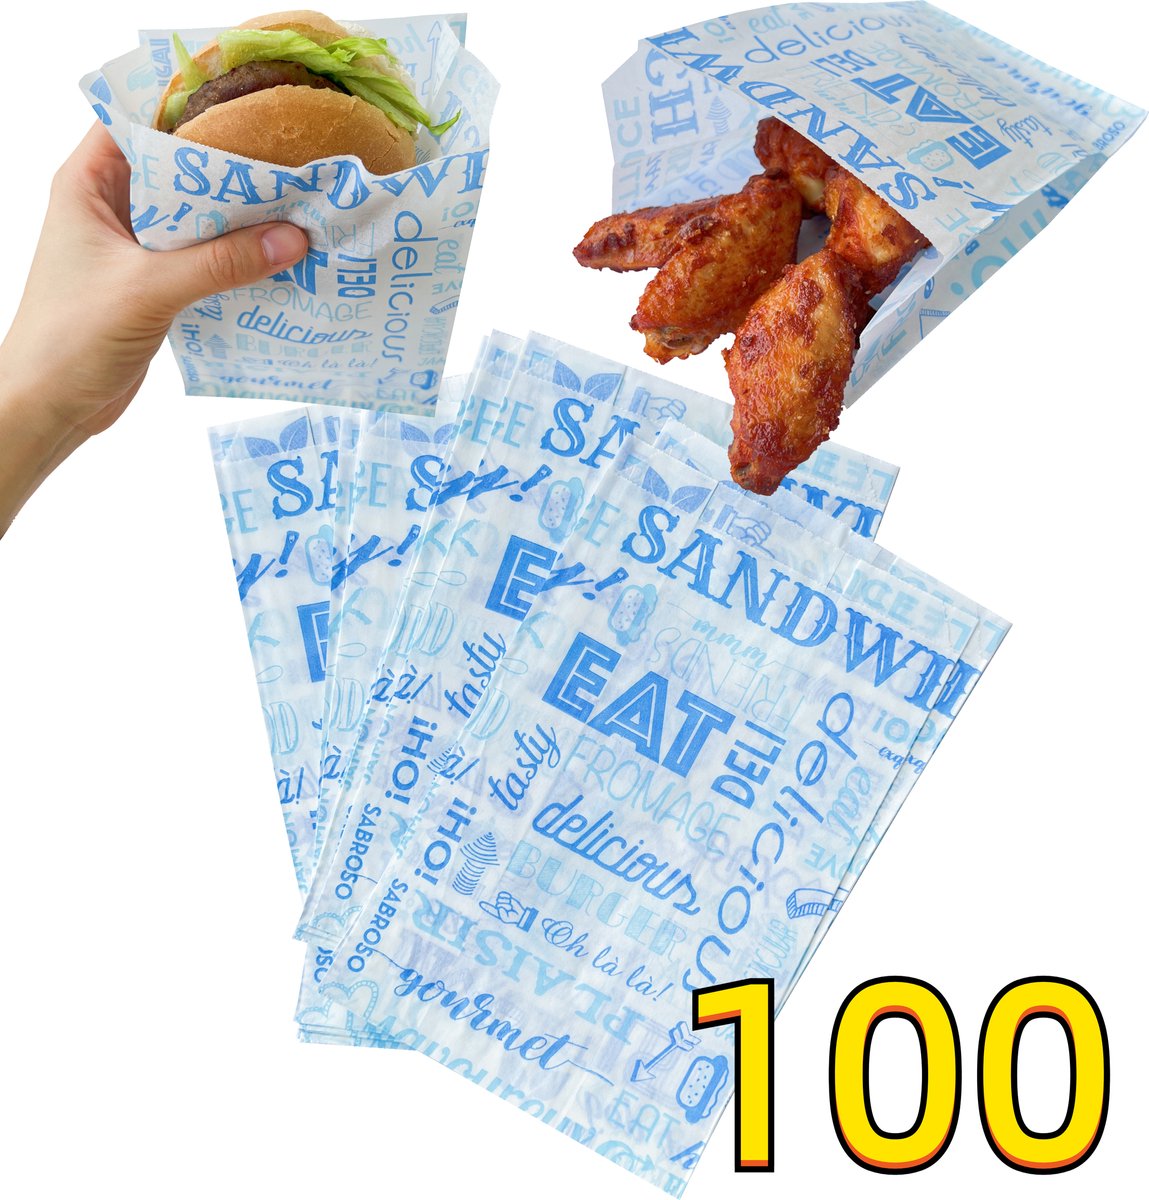 Rainbecom - 100 Stuks - Hamburger Zakje Papier - Vetvrij Papier - Papieren Zak voor Sandwiches - Blauw